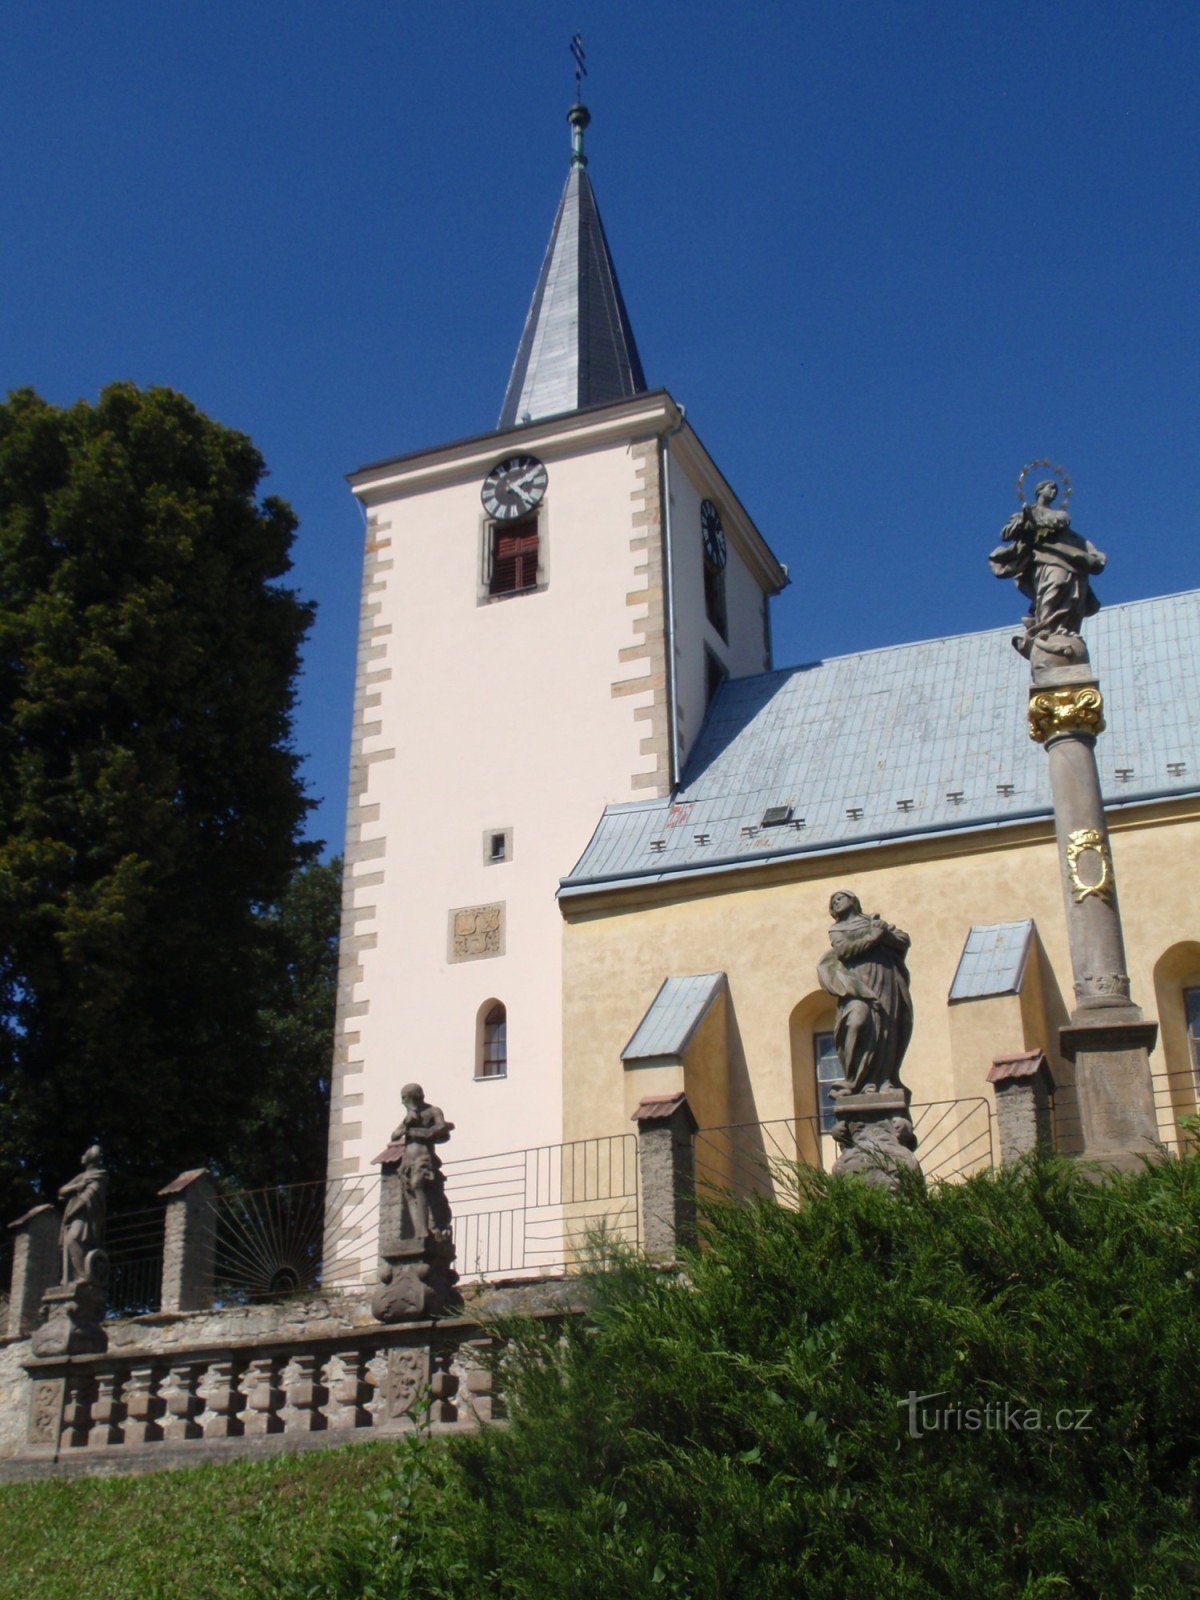 Biserica Sf. Jiří în Kunčín